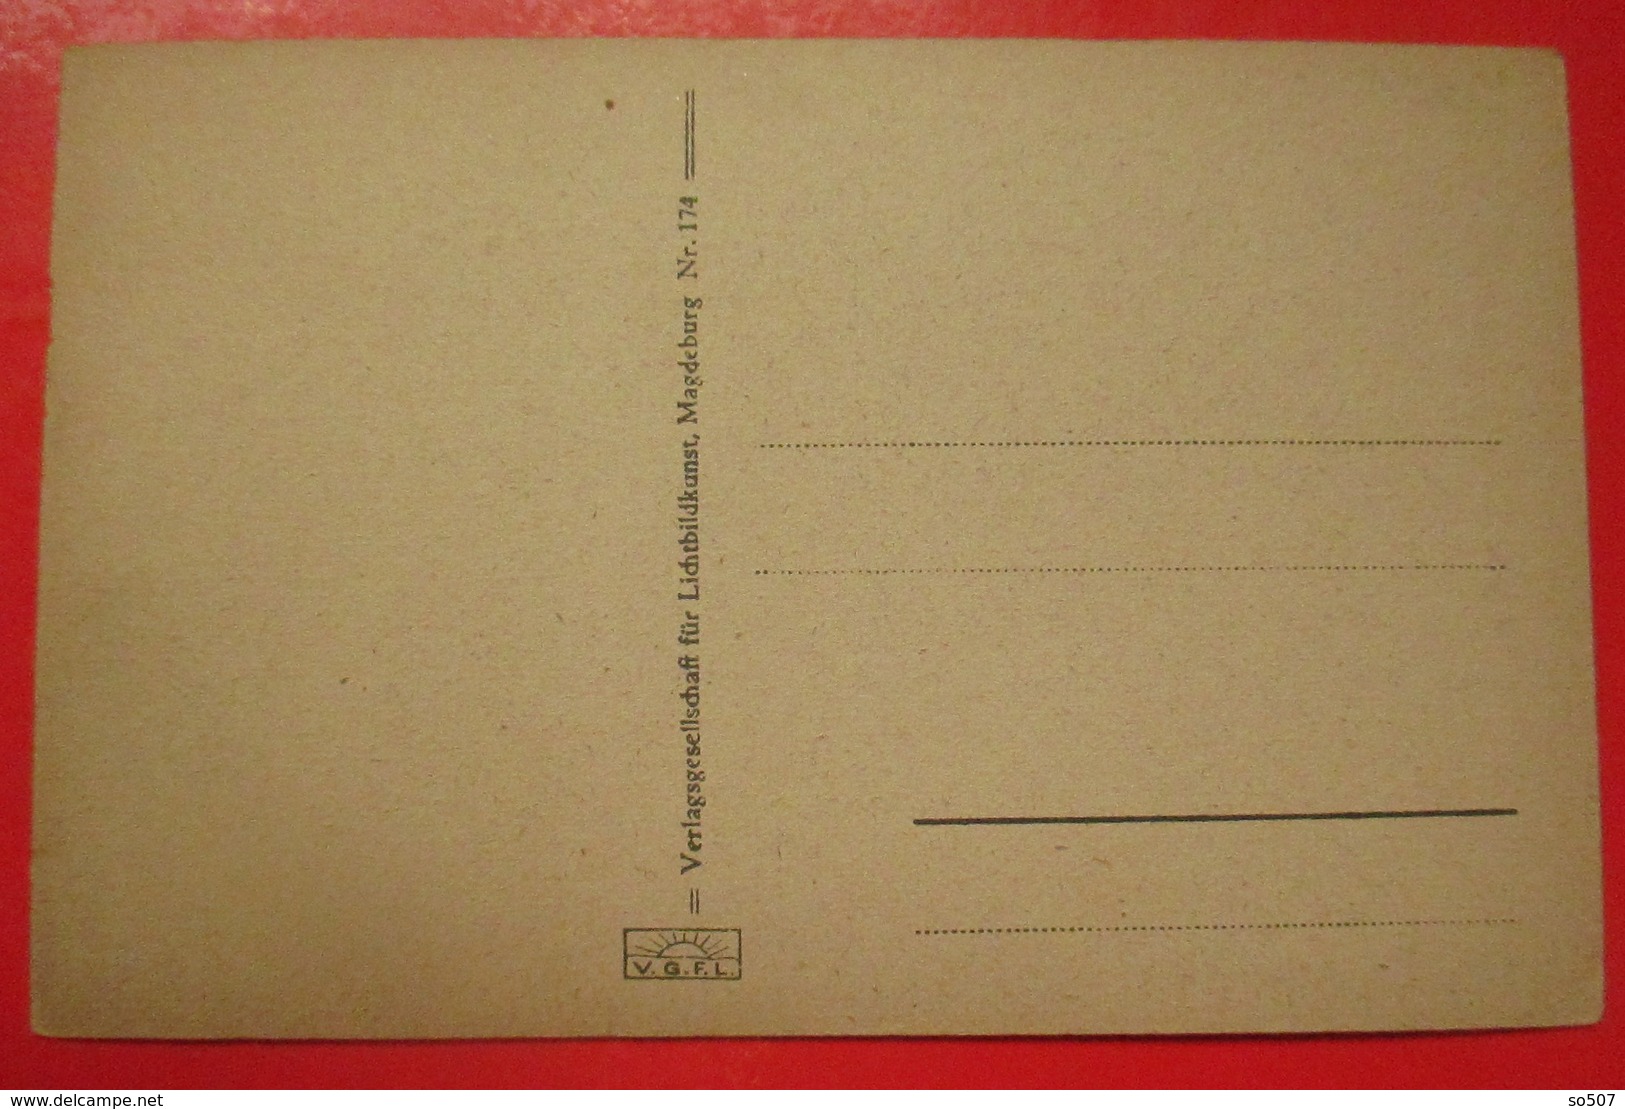 I2-Germany Vintage Postcard-Oberschierke, Ober Schierke - Schierke